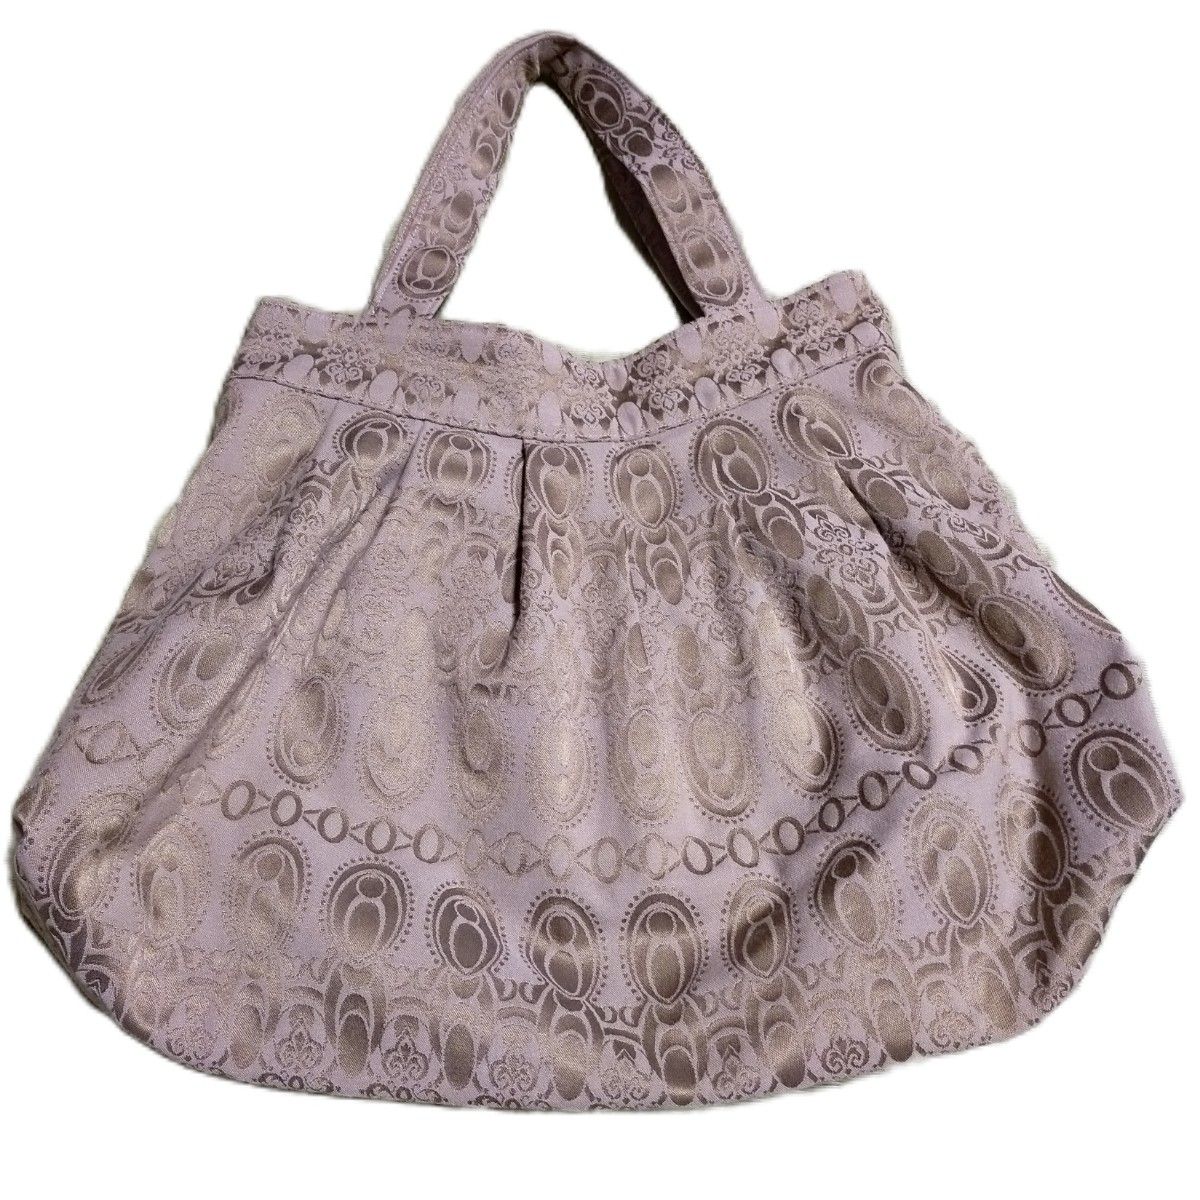 未使用品 ハンドメイド ショルダーバッグ ベージュ 布製品 レディース婦人バッグ ハンドバッグ